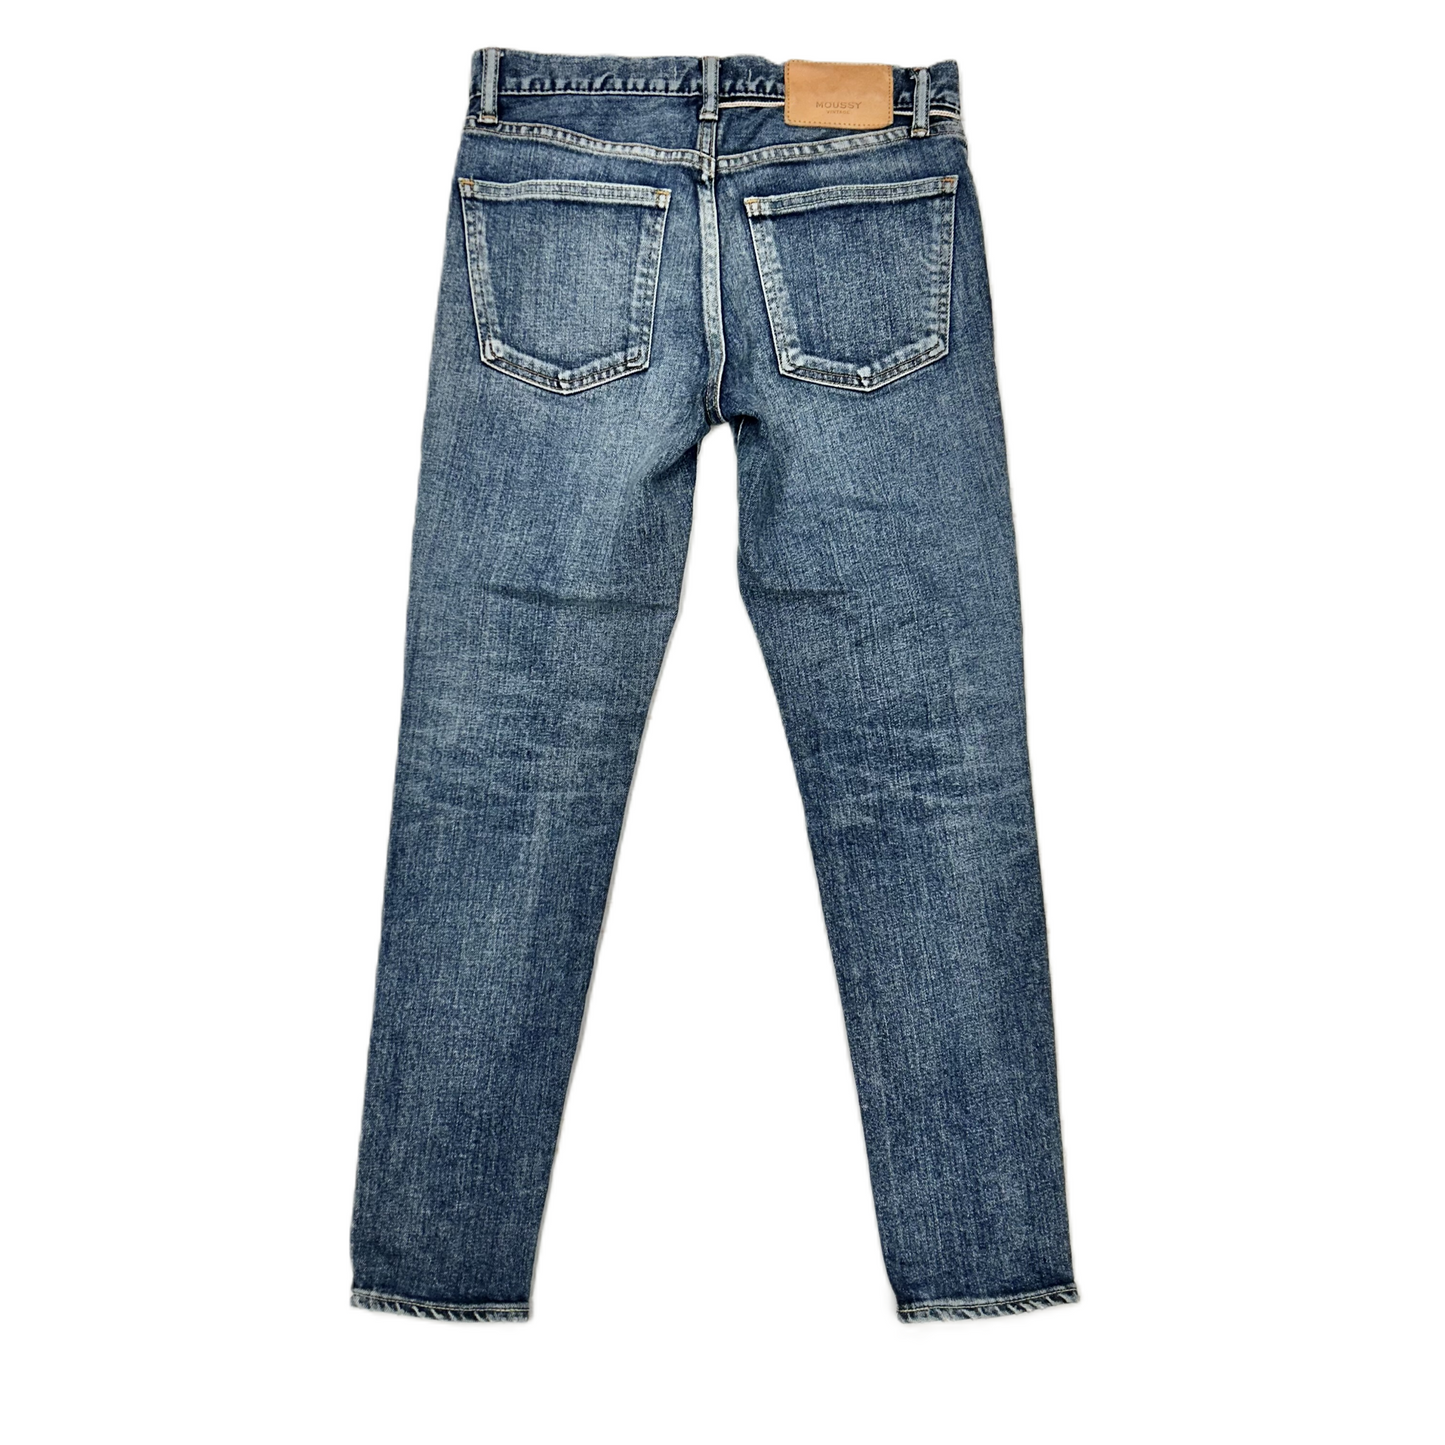 Denim Jeans Designer By Moussy Vintage, Size: 2